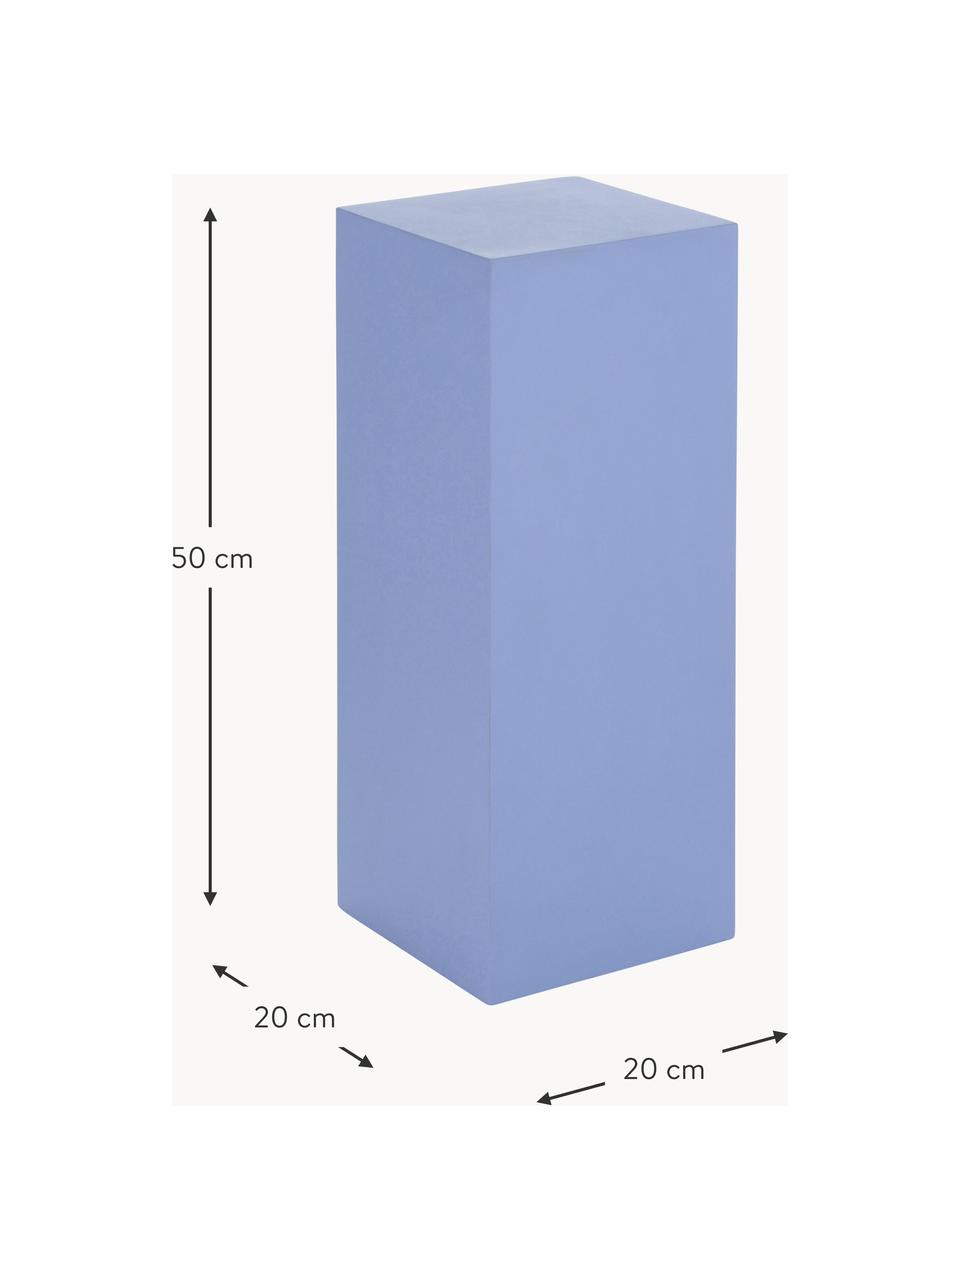 Dekorativní sloup Smash, dřevovláknitá deska střední hustoty (MDF), Modrá, Š 20 cm, V 50 cm